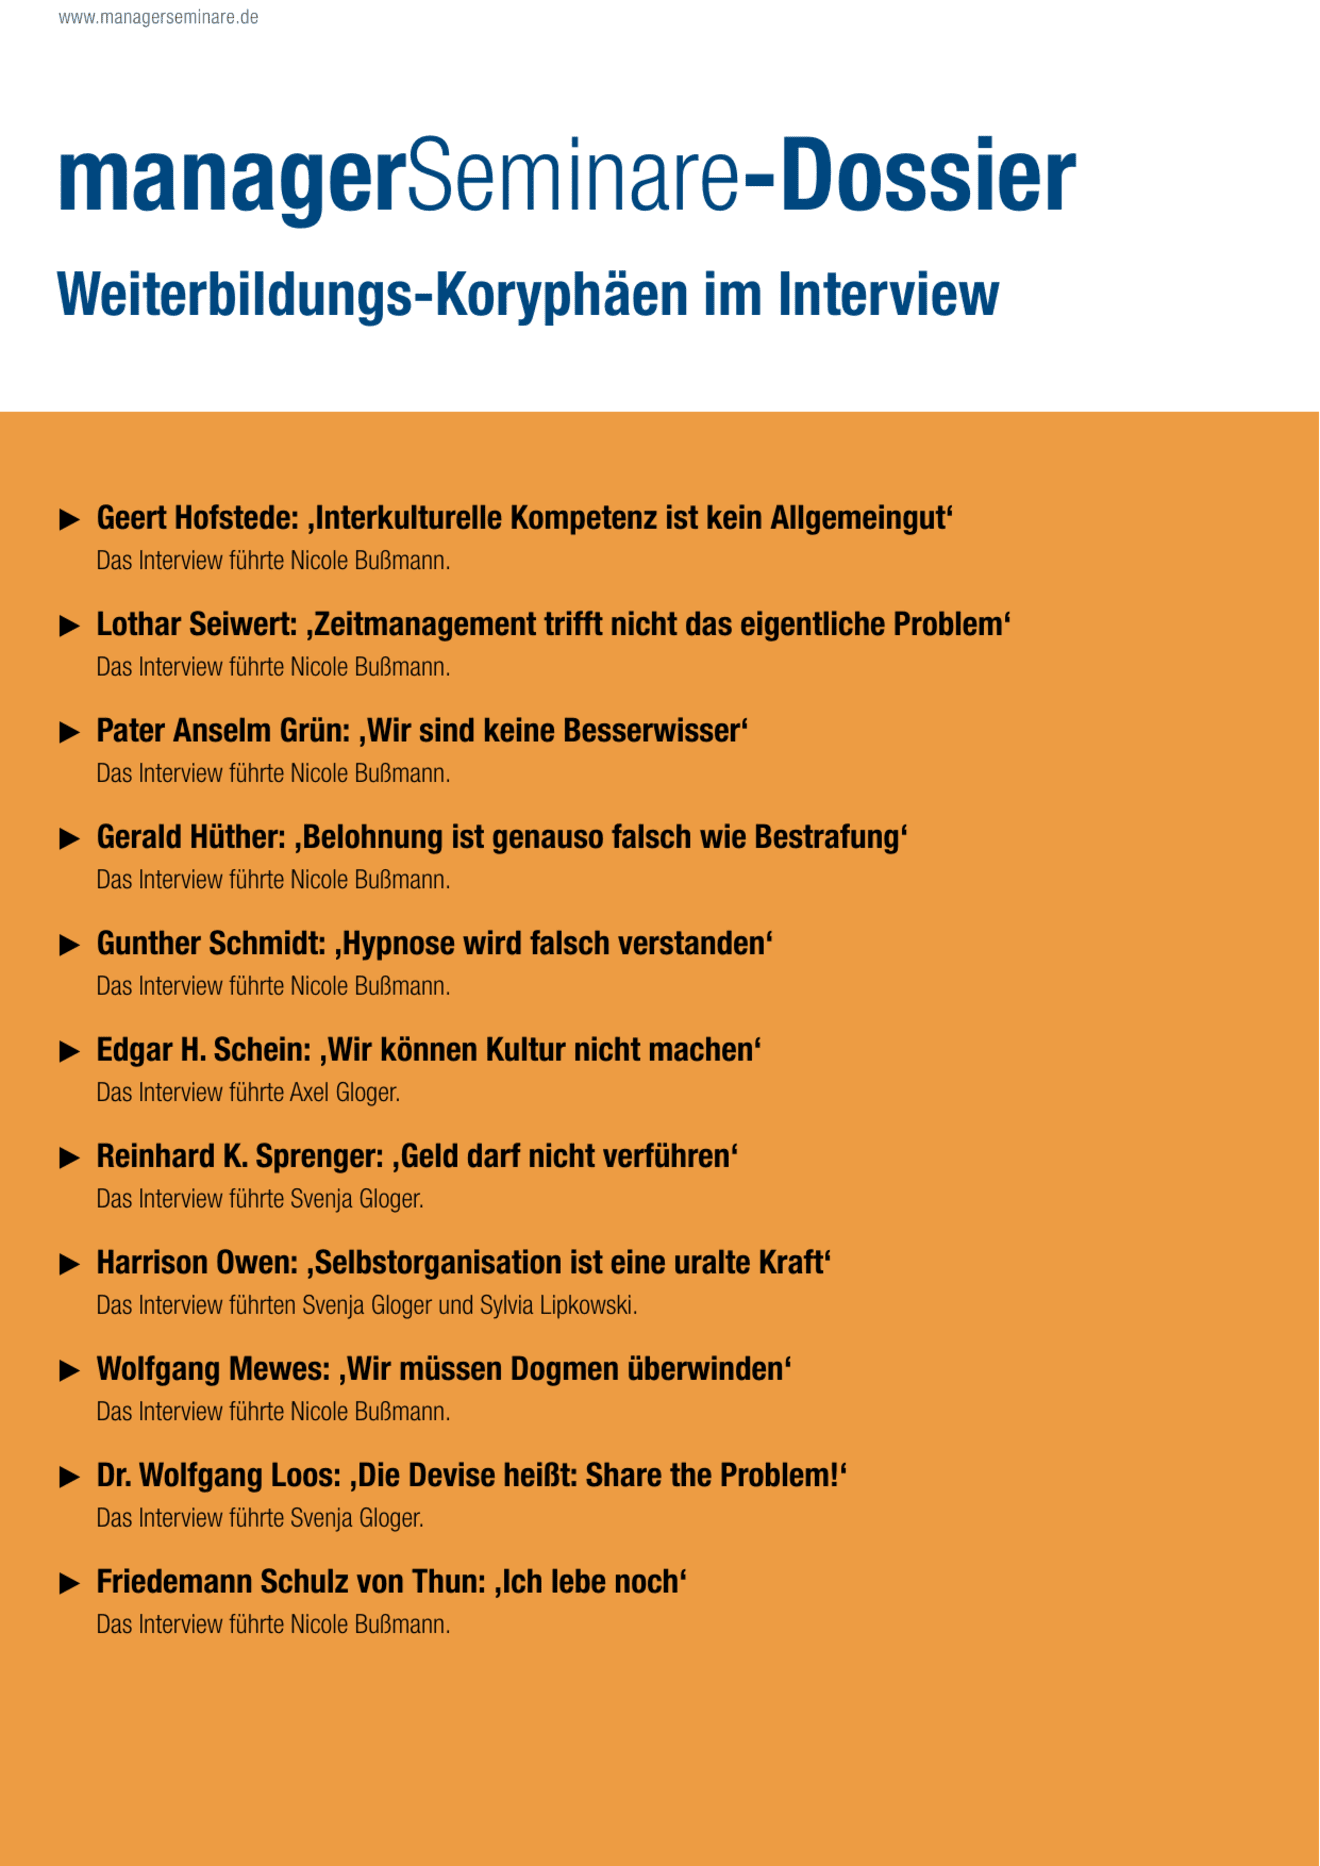 Dossier Weiterbildungs-Koryphäen im Interview